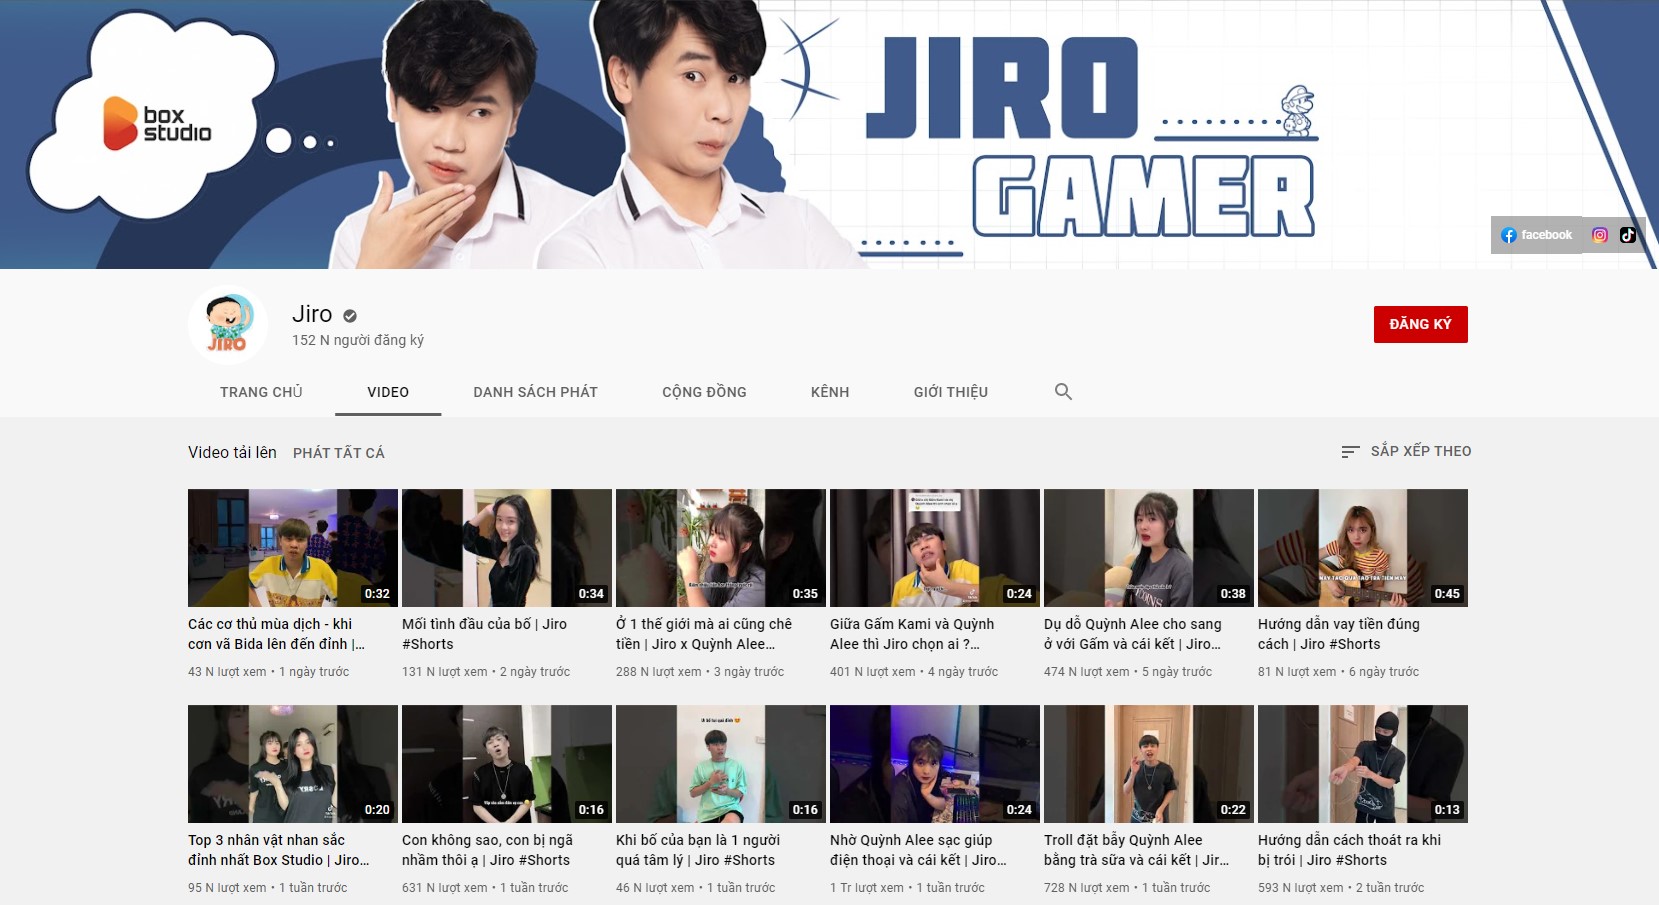 Jiro thậm chí còn nhiều subscribe hơn Gấm Kami trên Youtube